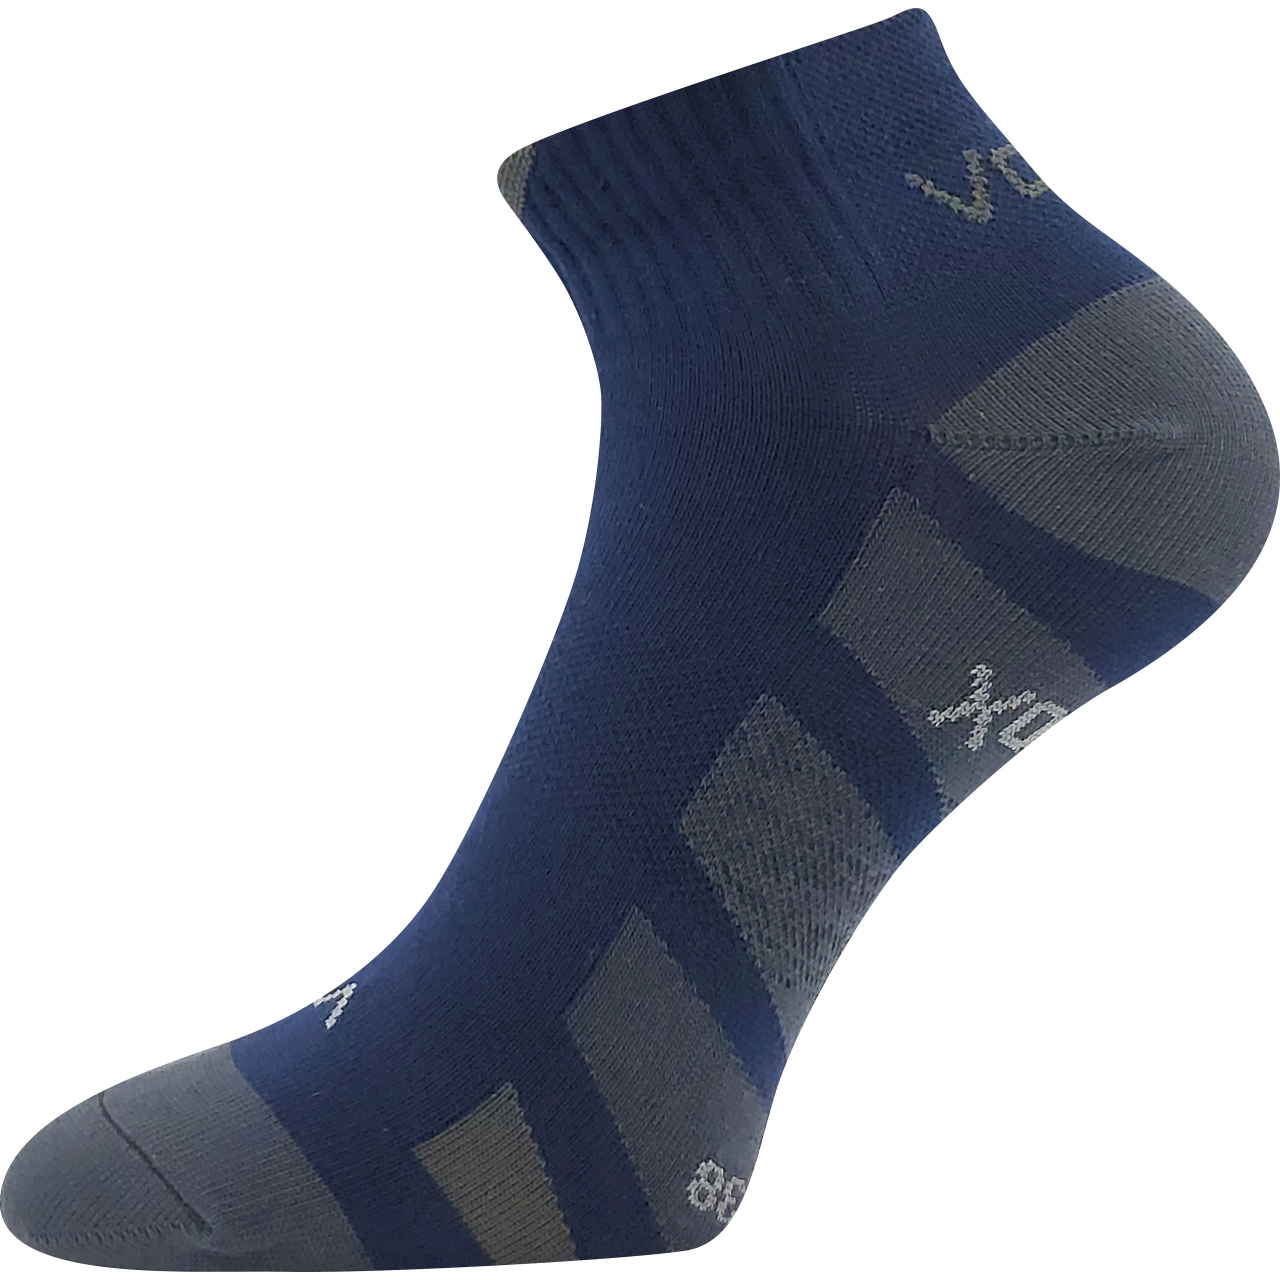 Ponožky unisex slabé Voxx Gastm - tmavě modré, 39-42